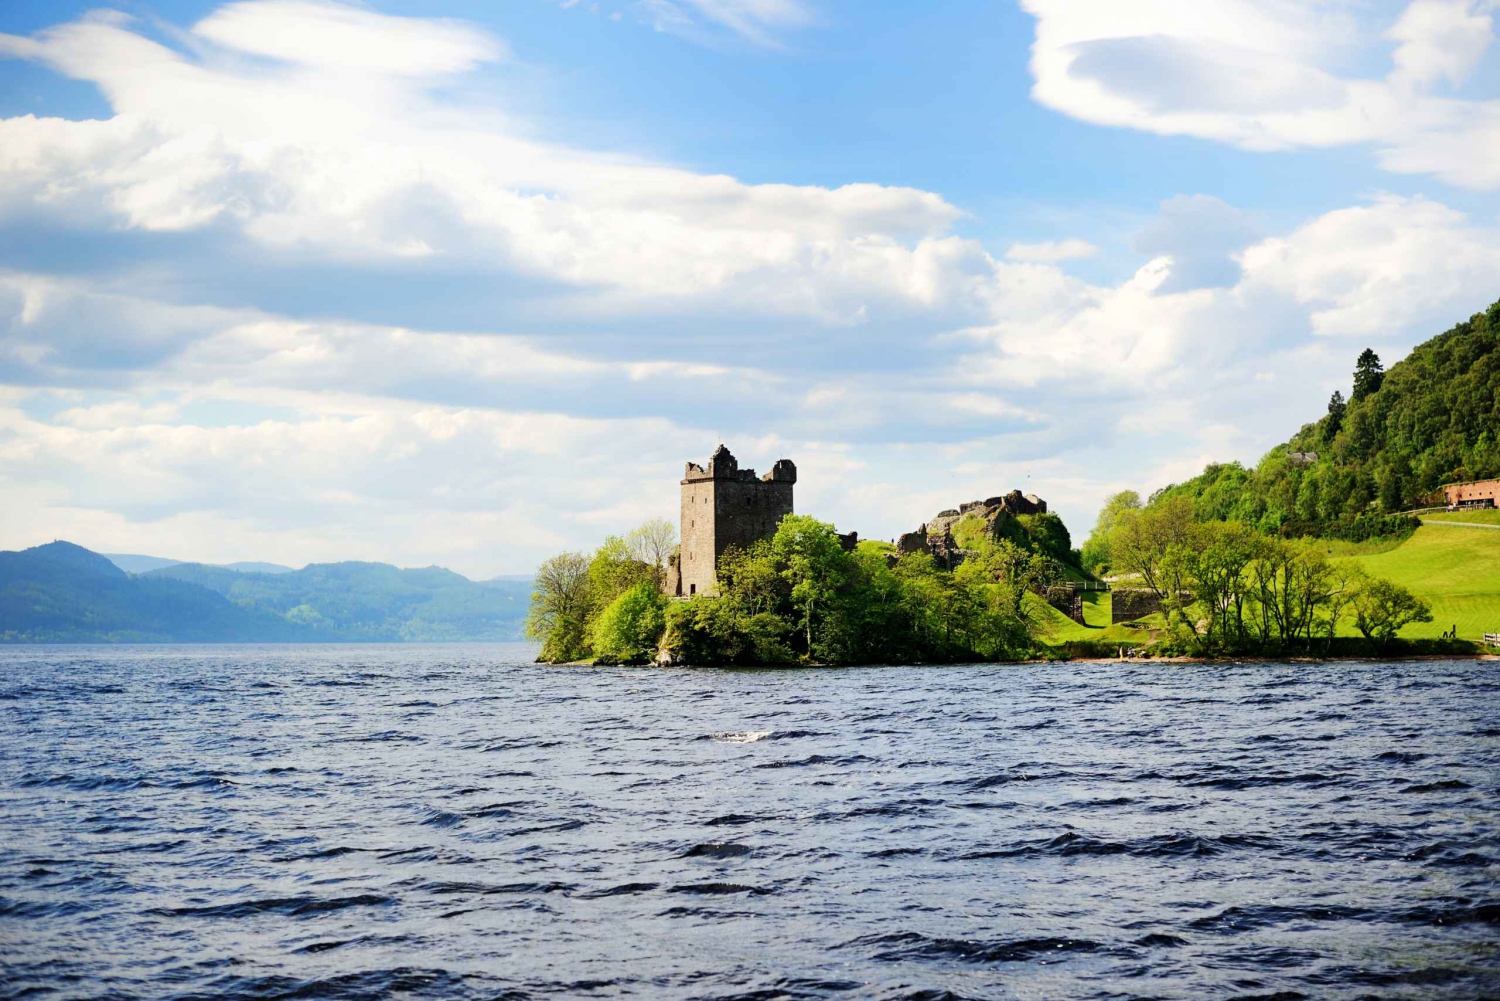 Från Edinburgh: Privat dagsutflykt till Loch Ness i lyxig MPV